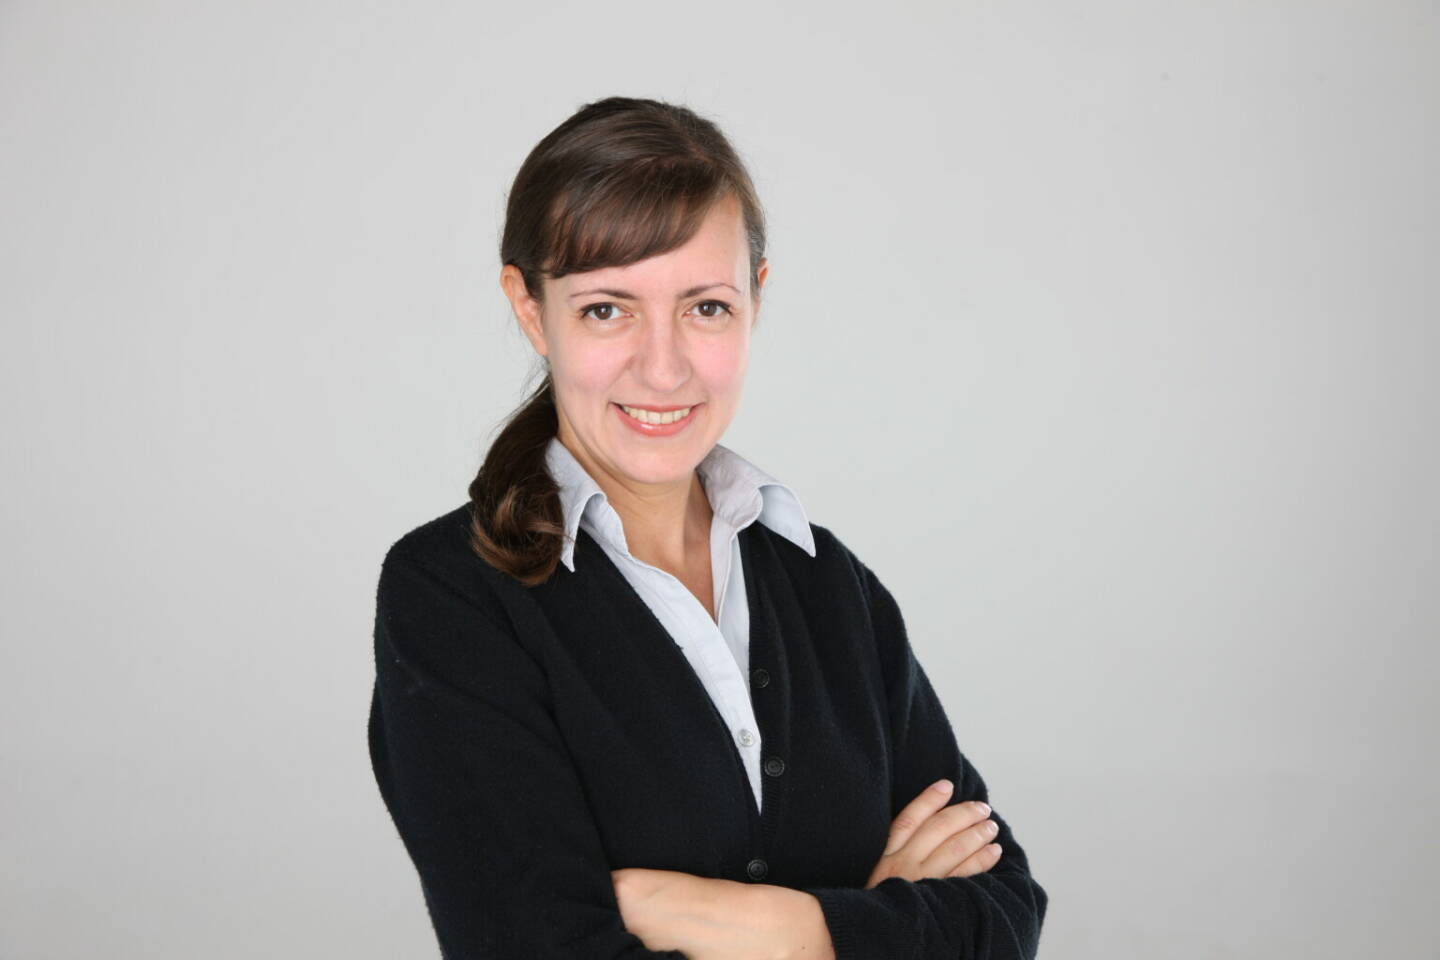 Austria Wirtschaftsservice: Vanja Bernhauer ist neue Abteilungsleiterin für Schutzrechtsmanagement in der aws, Fotocredit:aws/ Bernhauer